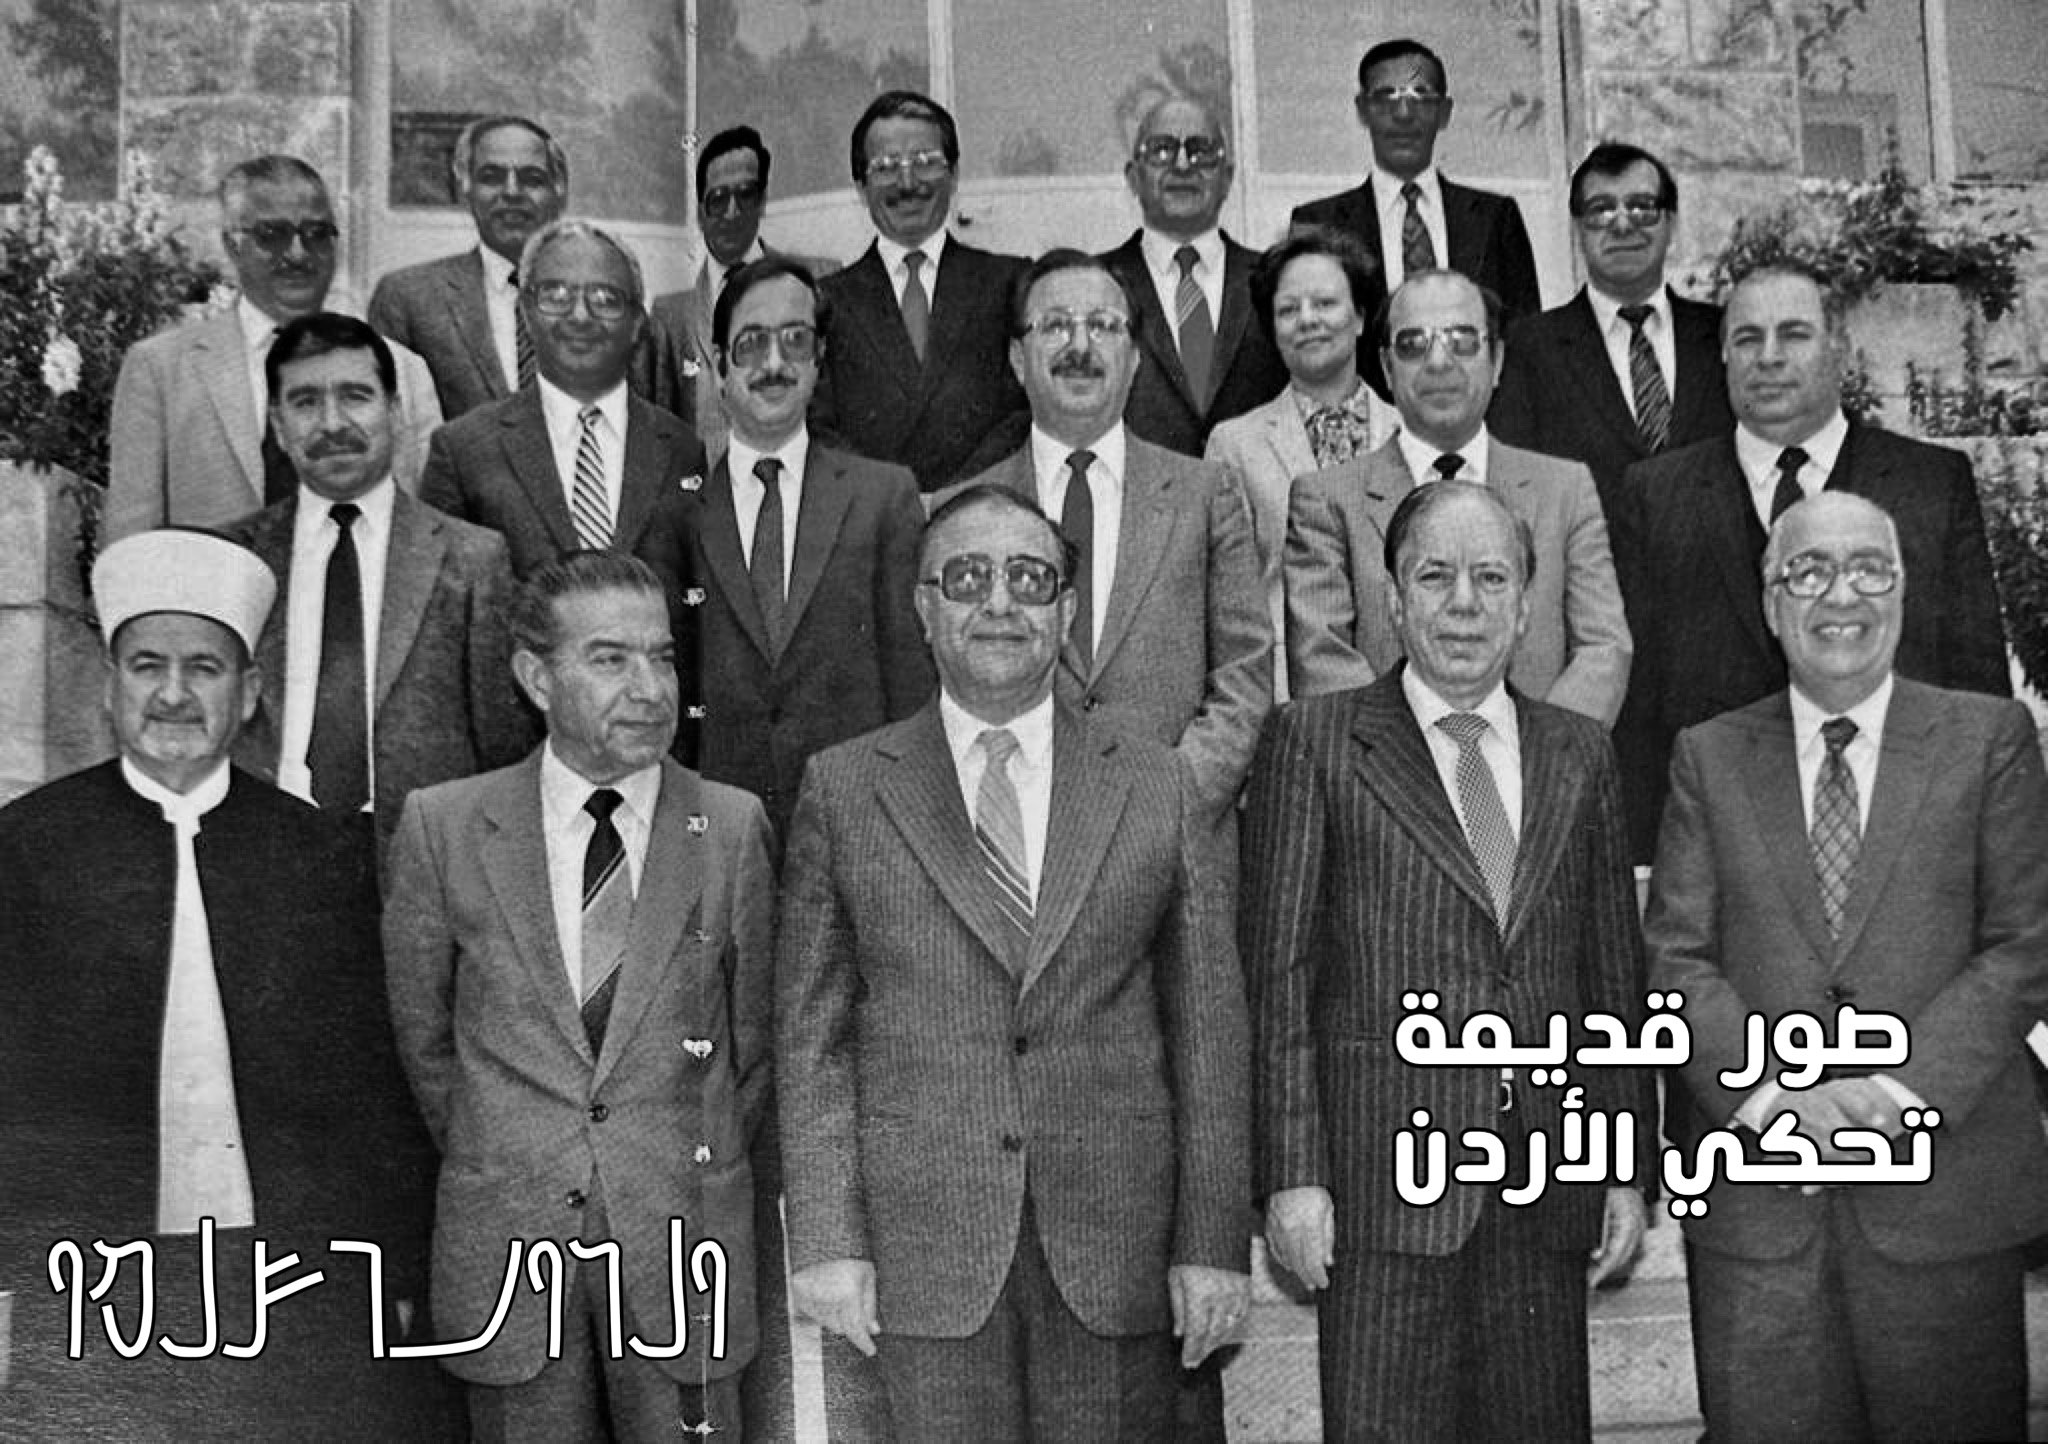 مجلس عمداء الجامعة الأردنية قبل 40 عامًا 